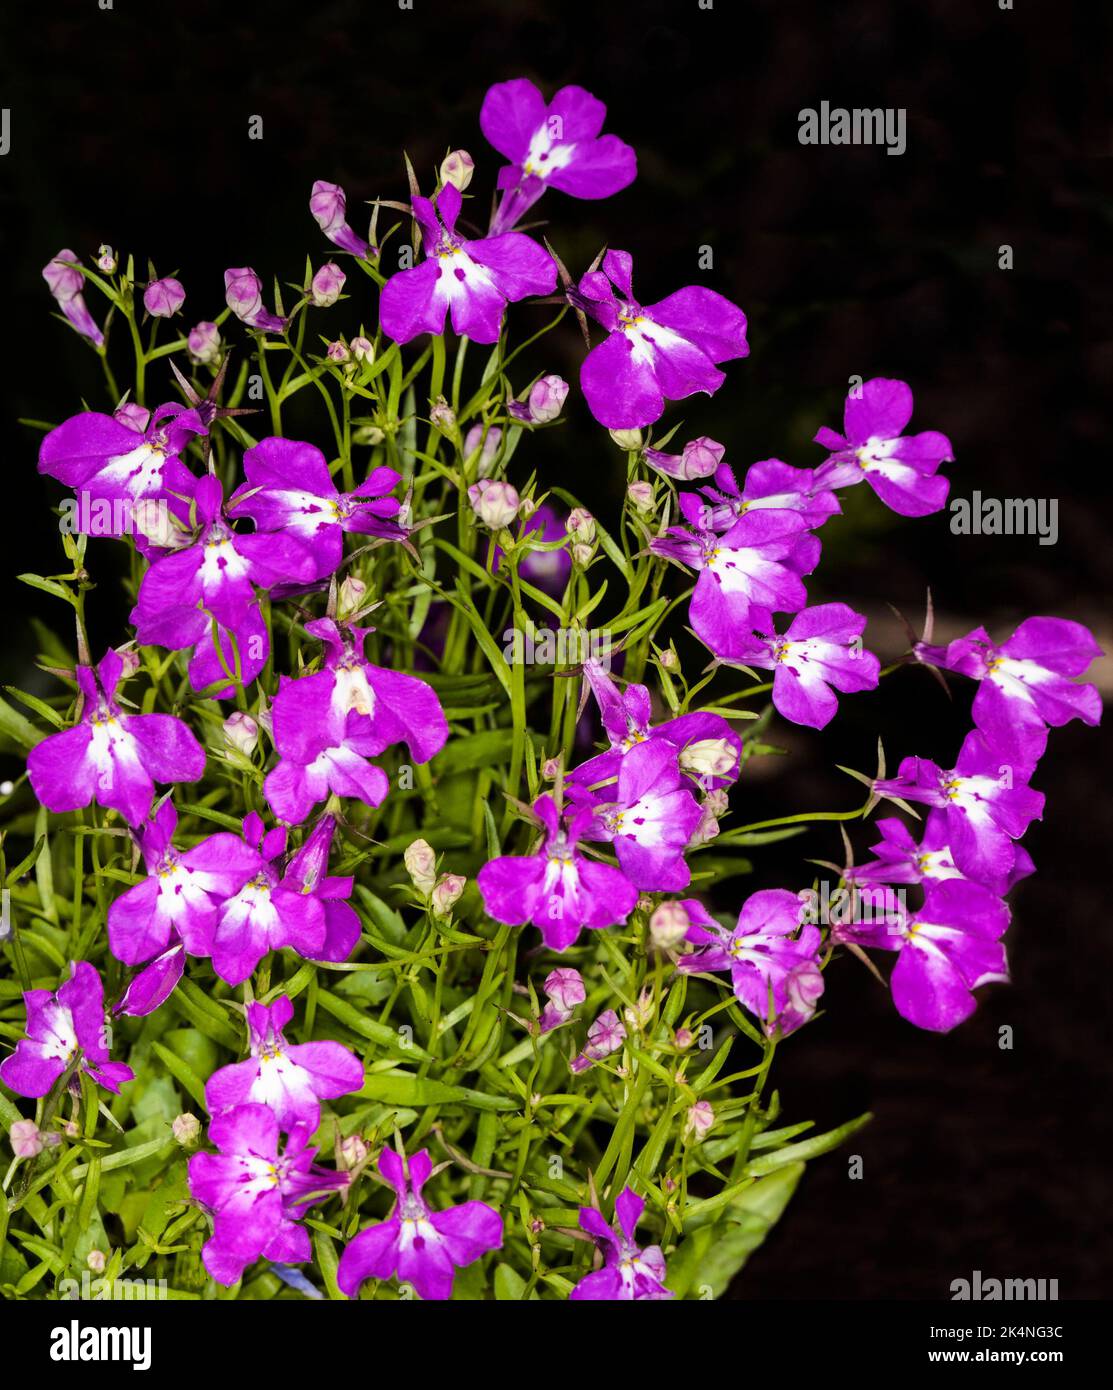 Ansammlung von leuchtend violetten / magentafarbenen Blüten und leuchtend grünen Blättern von Lobelia erinus, einjähriger Gartenpflanze, vor dunklem Hintergrund, in Australien Stockfoto